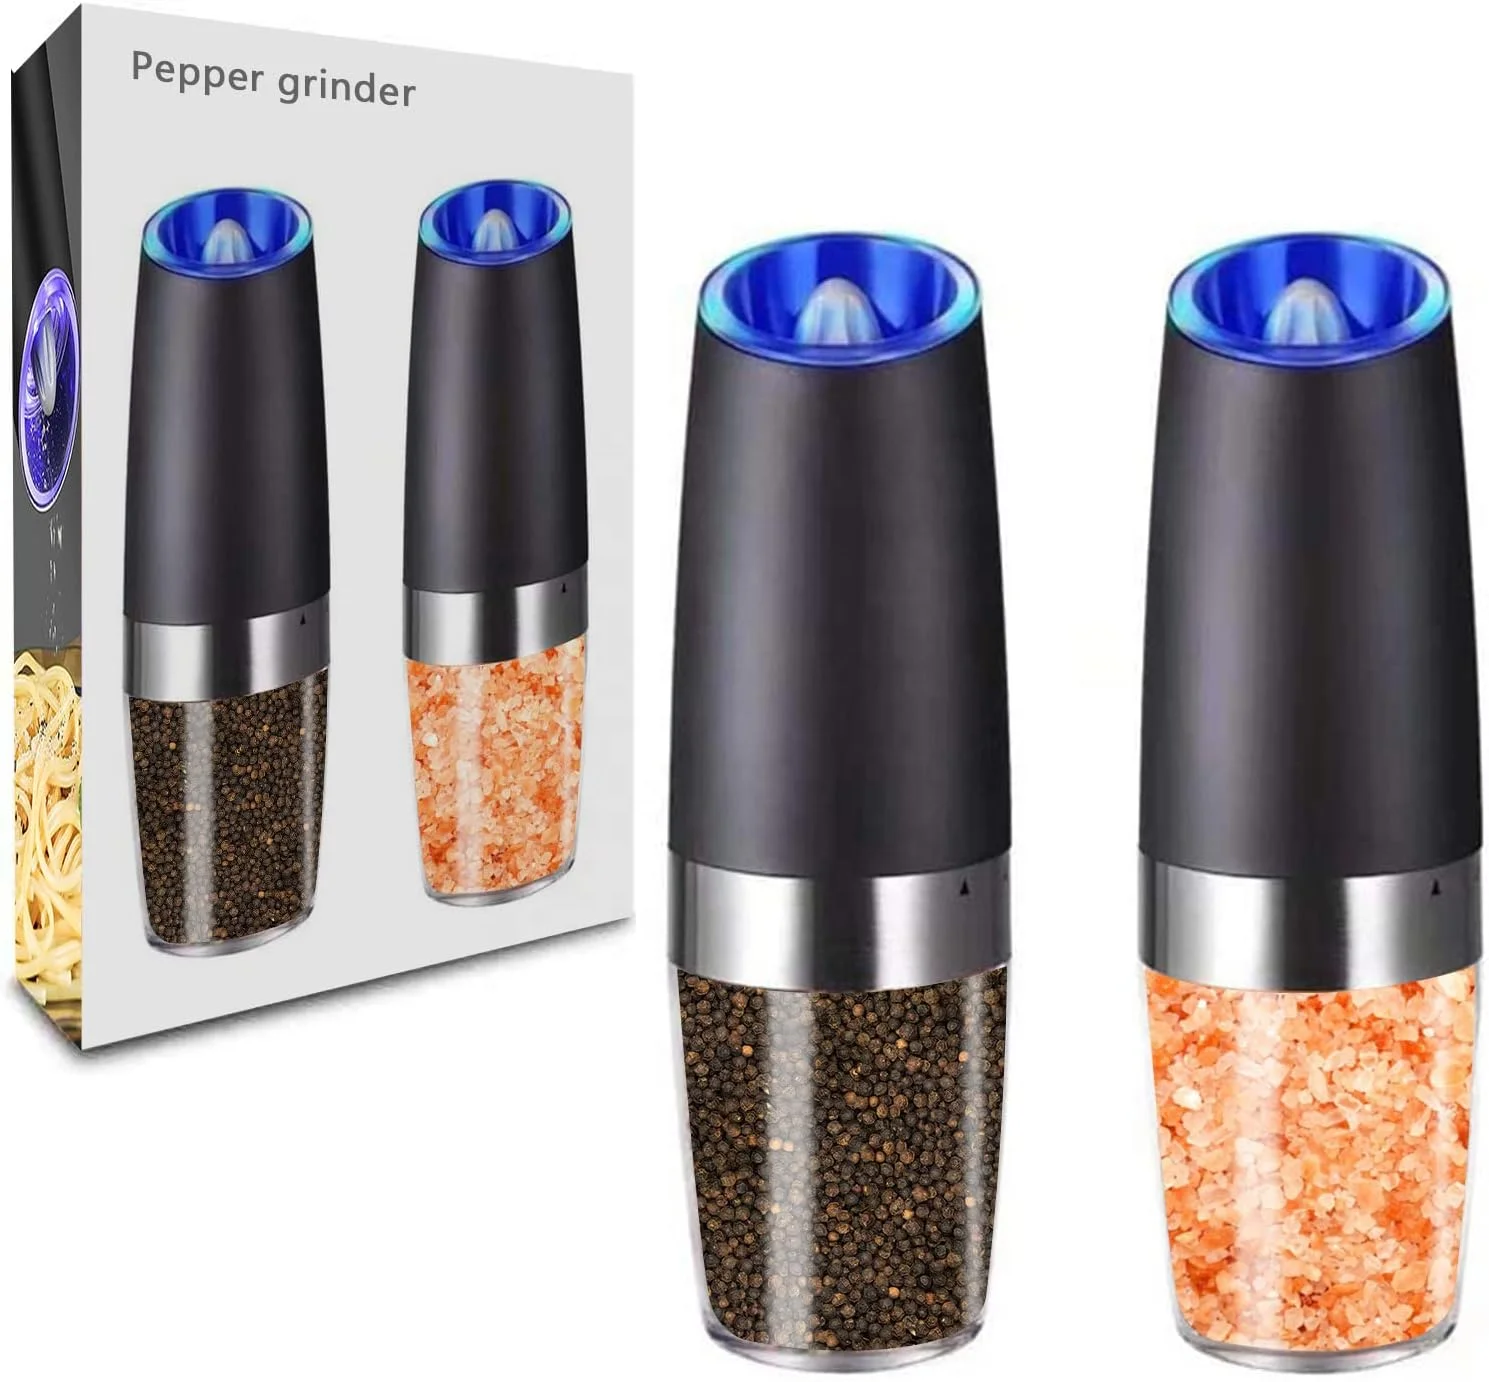 

Black pepper mill grinder set spice jar Electric gravity salt and pepper grinder with blue light